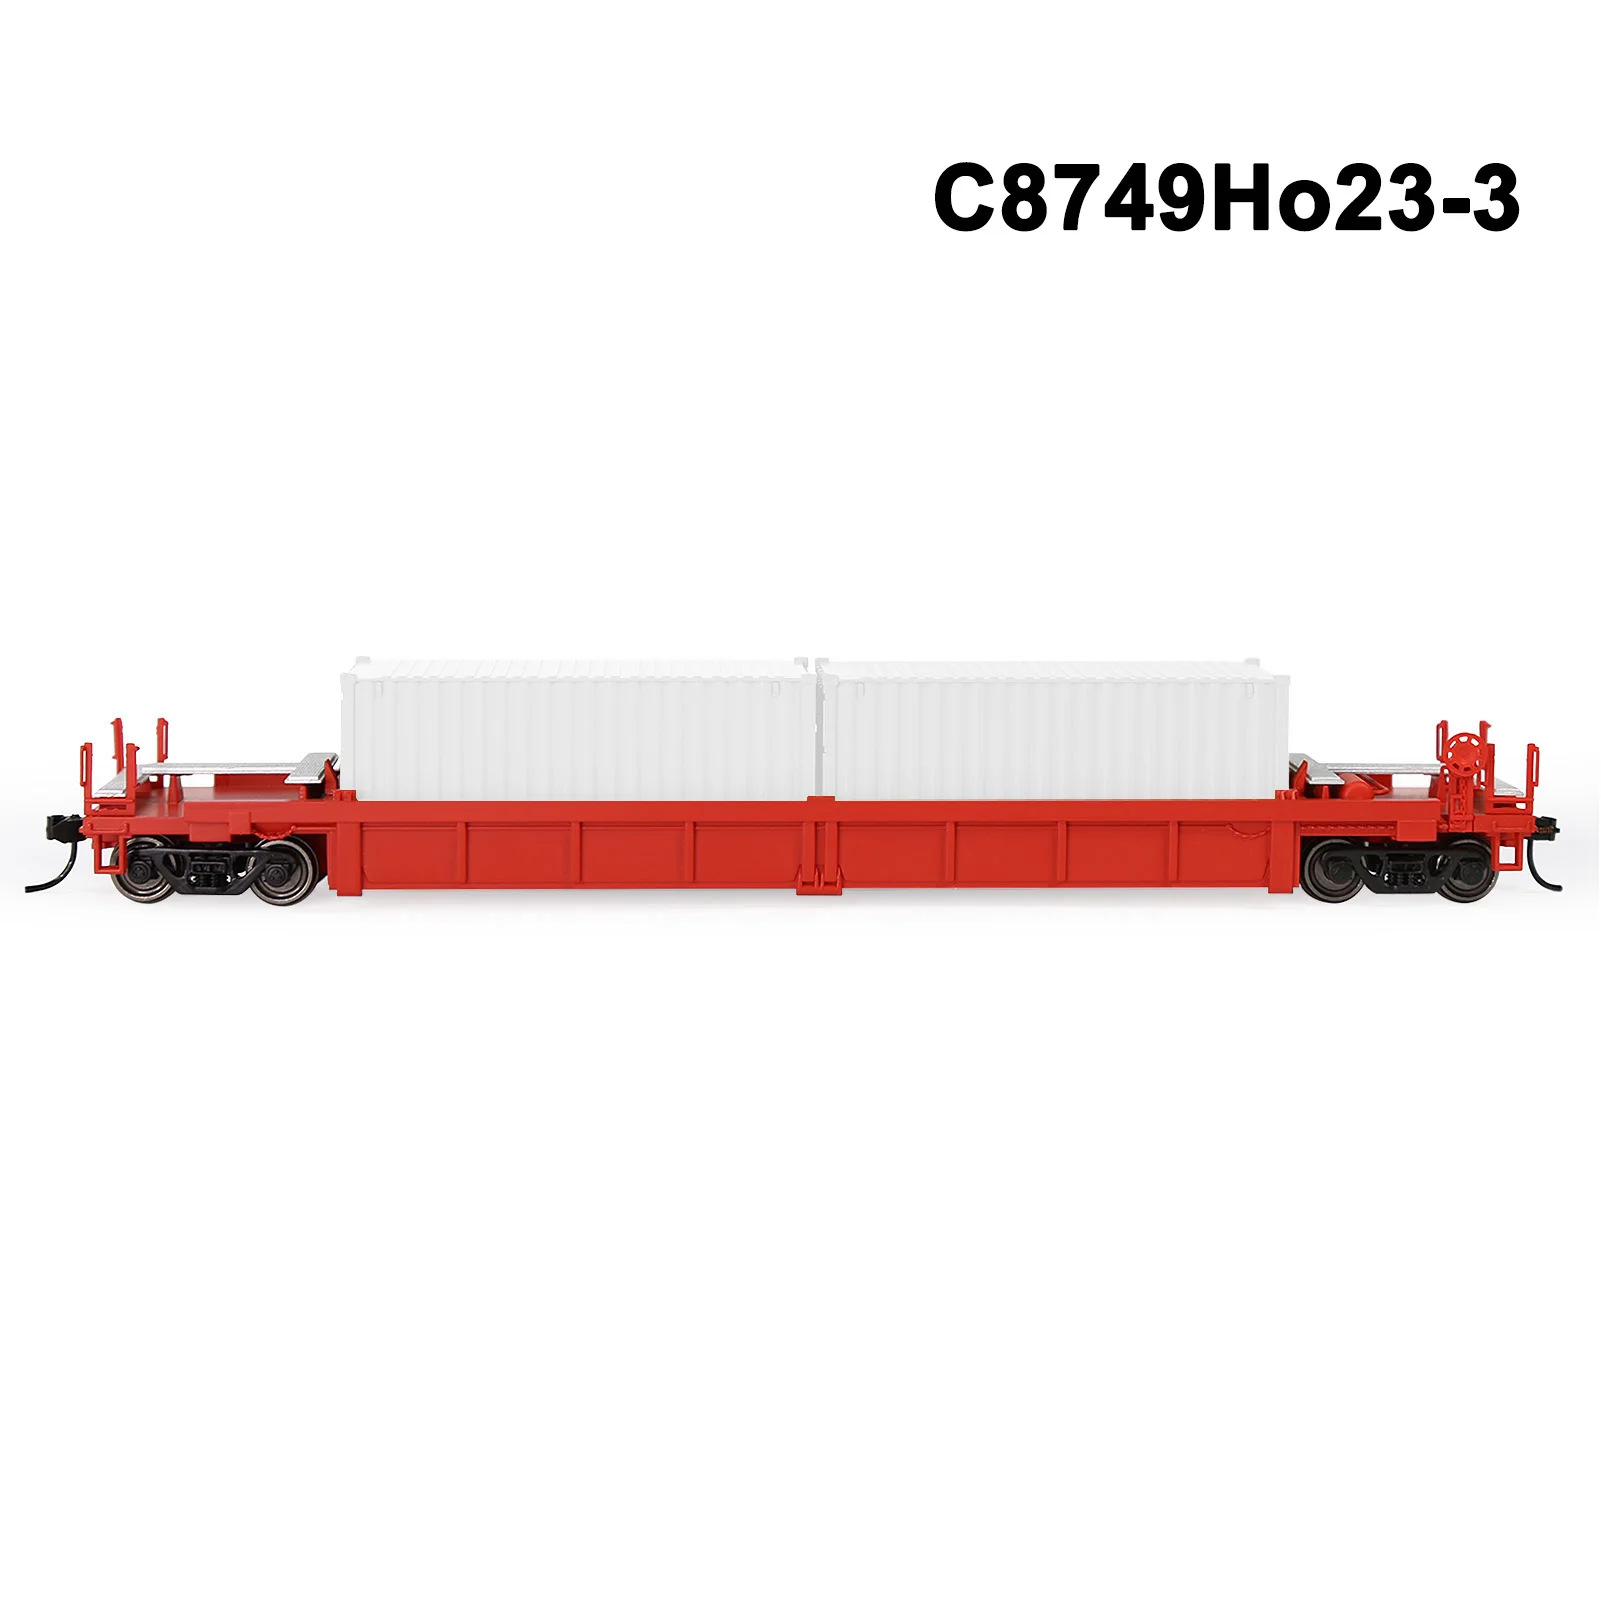 C8749Ho23-2